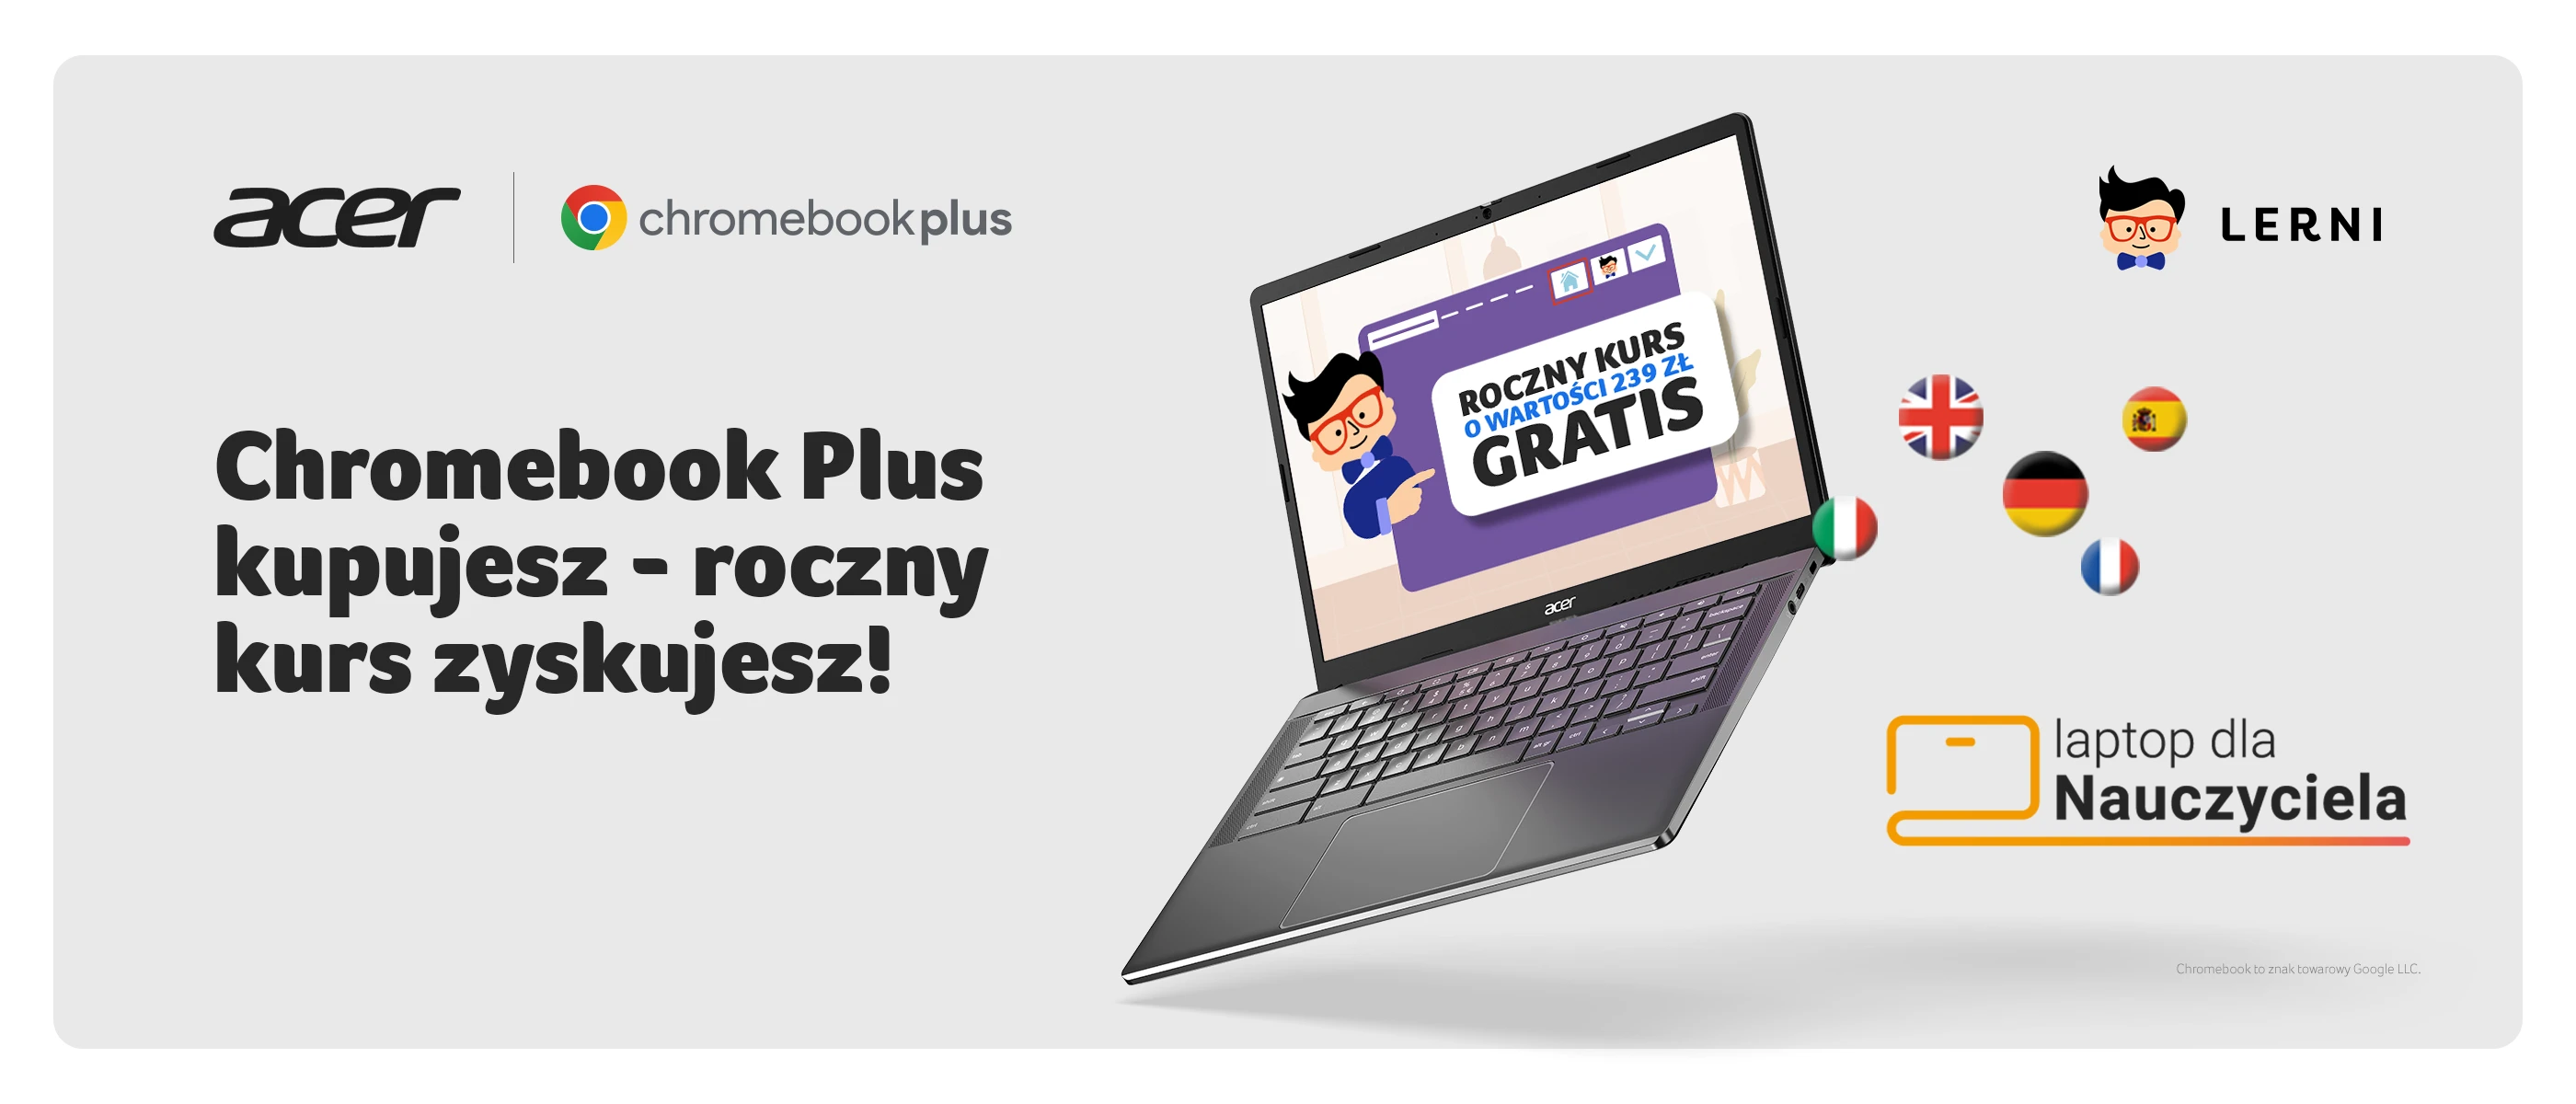 Chromebook Plus kupujesz - roczny kurs zyskujesz!